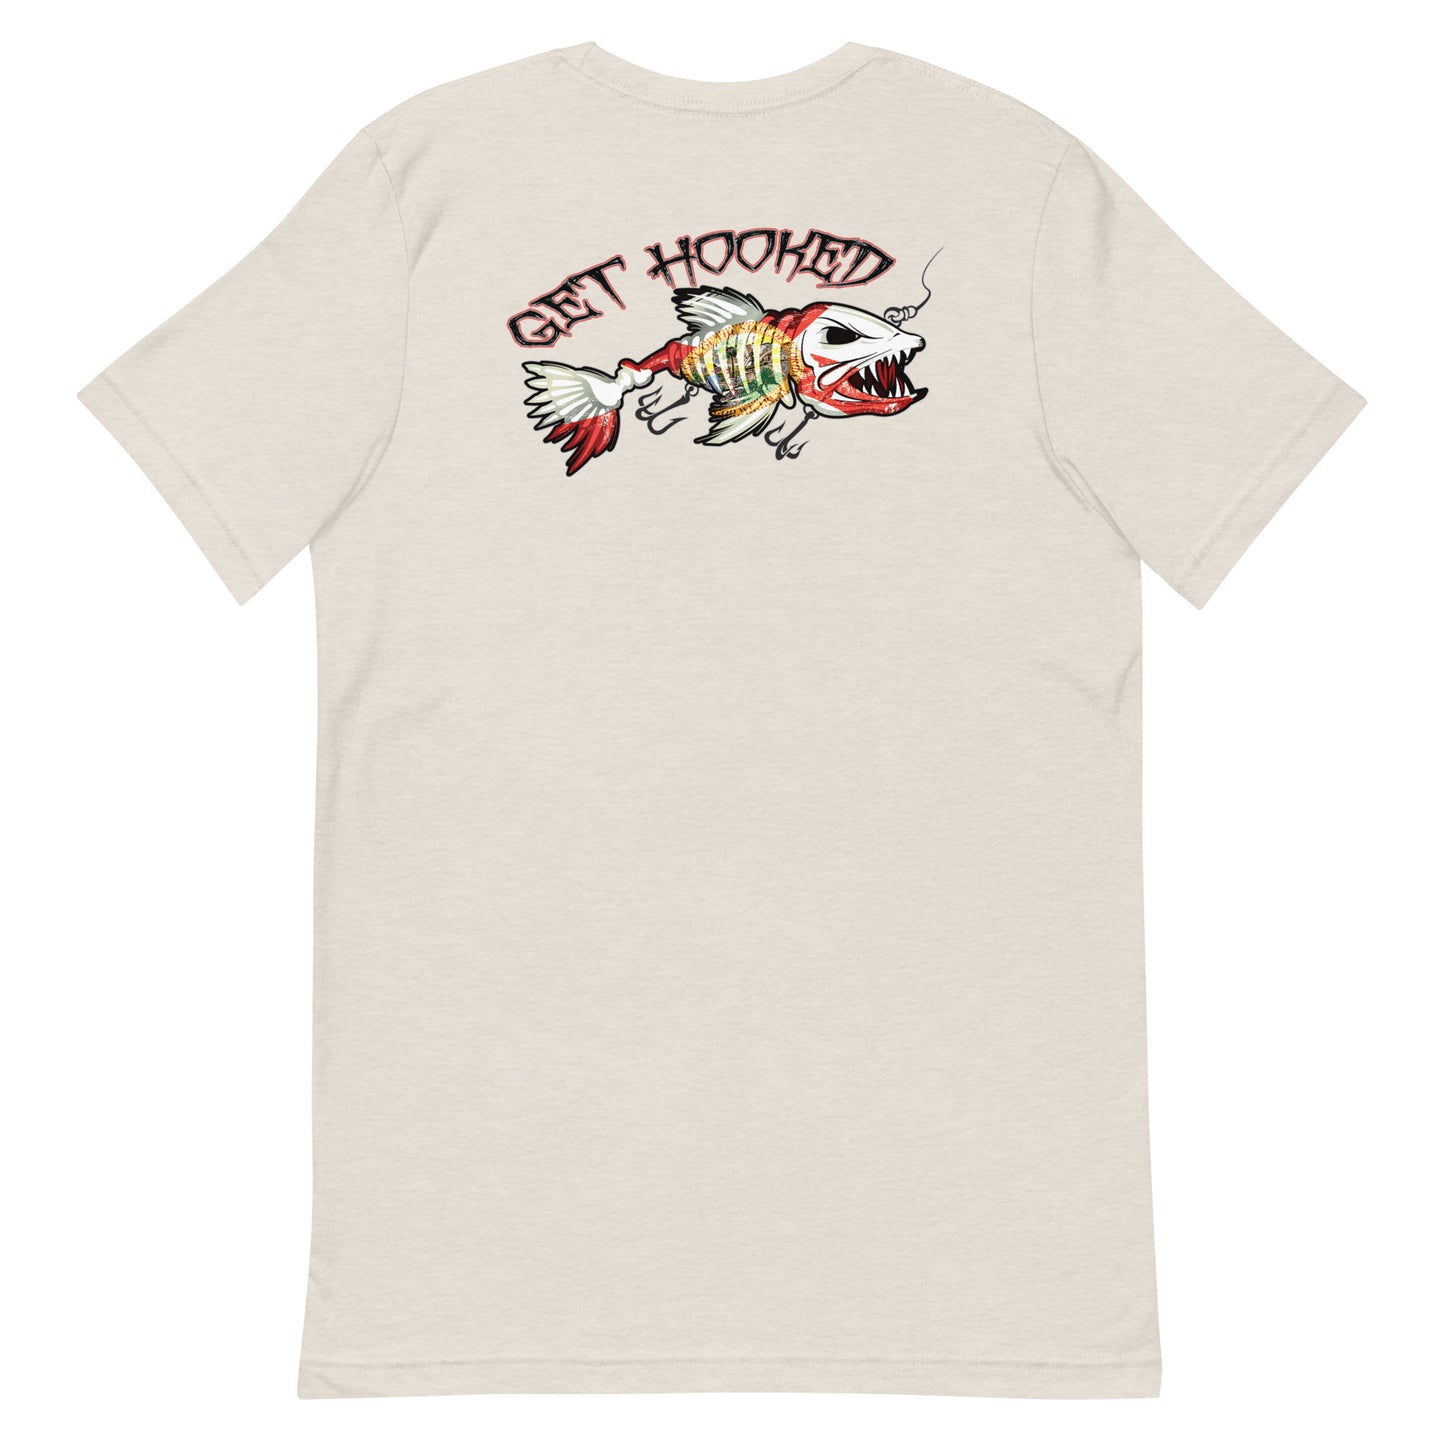 Get Hooked Florida Unisex T Shirt